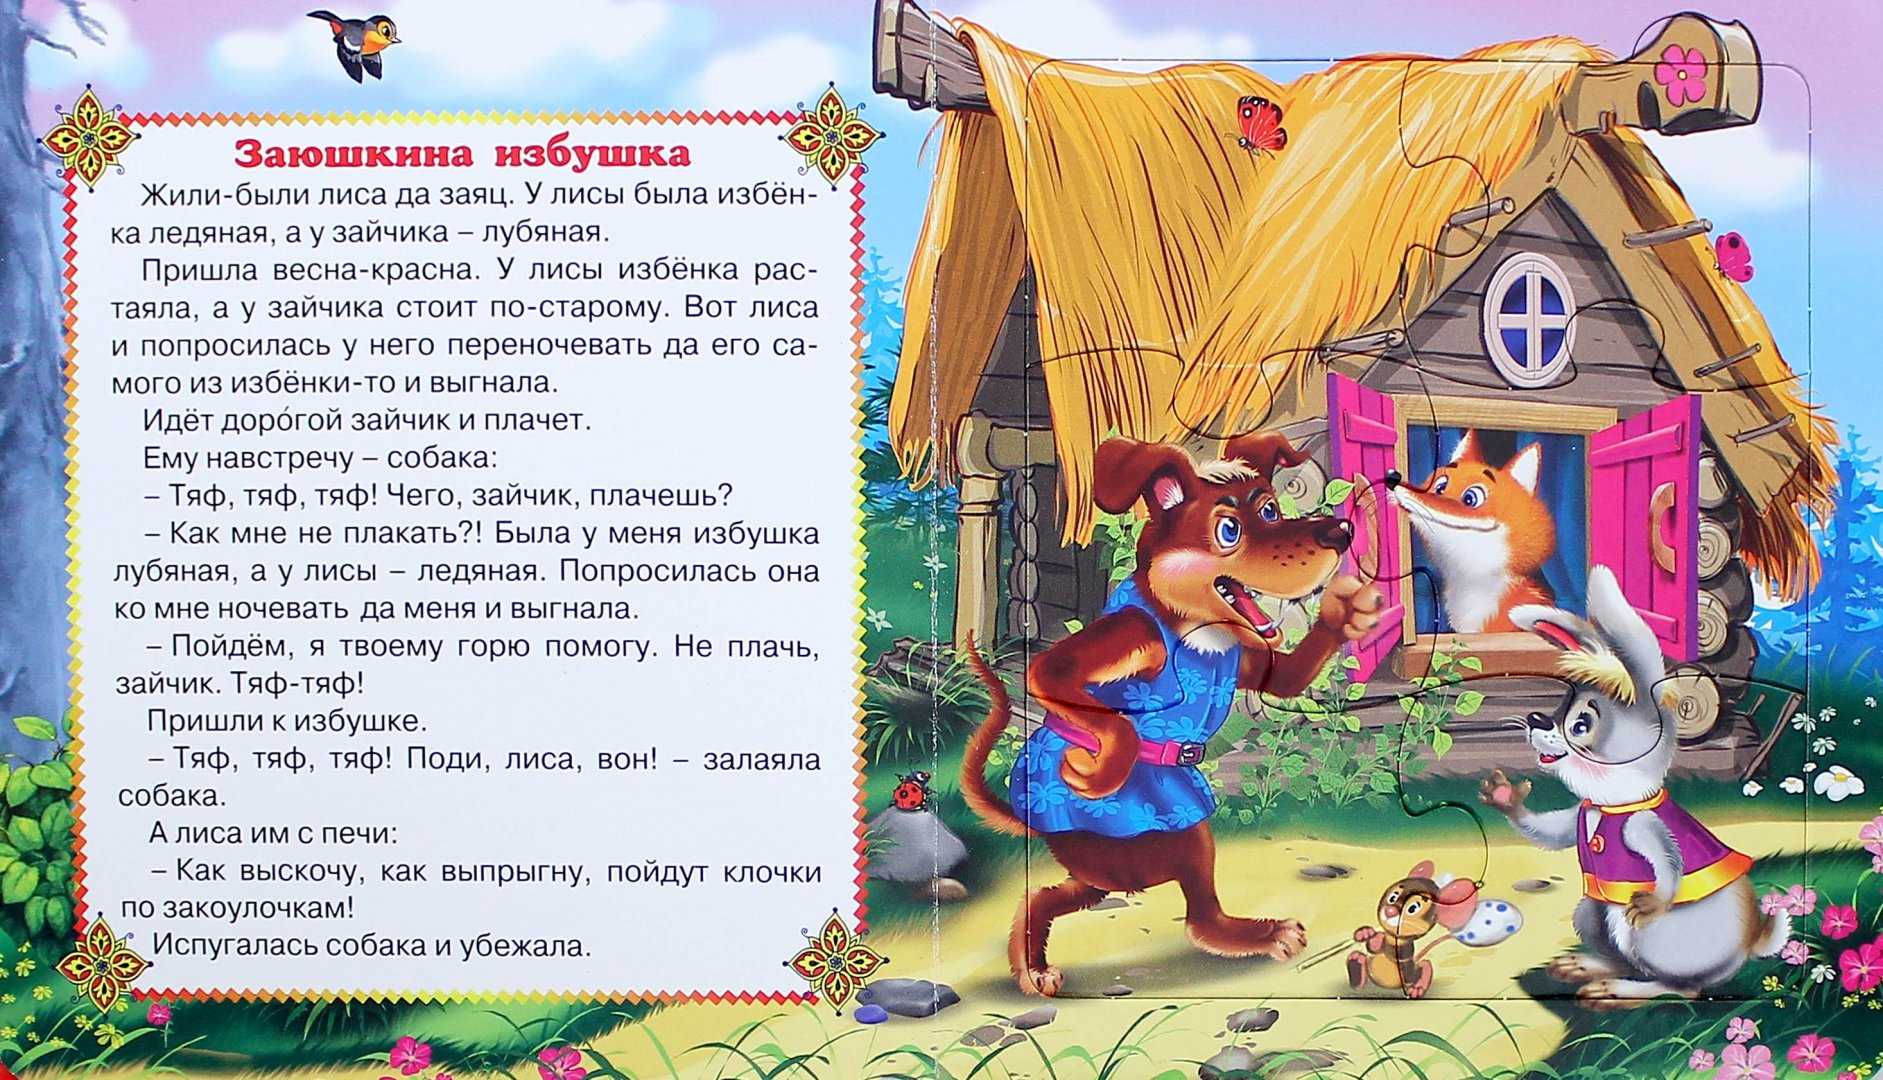 Заюшкина избушка: русская народная сказка